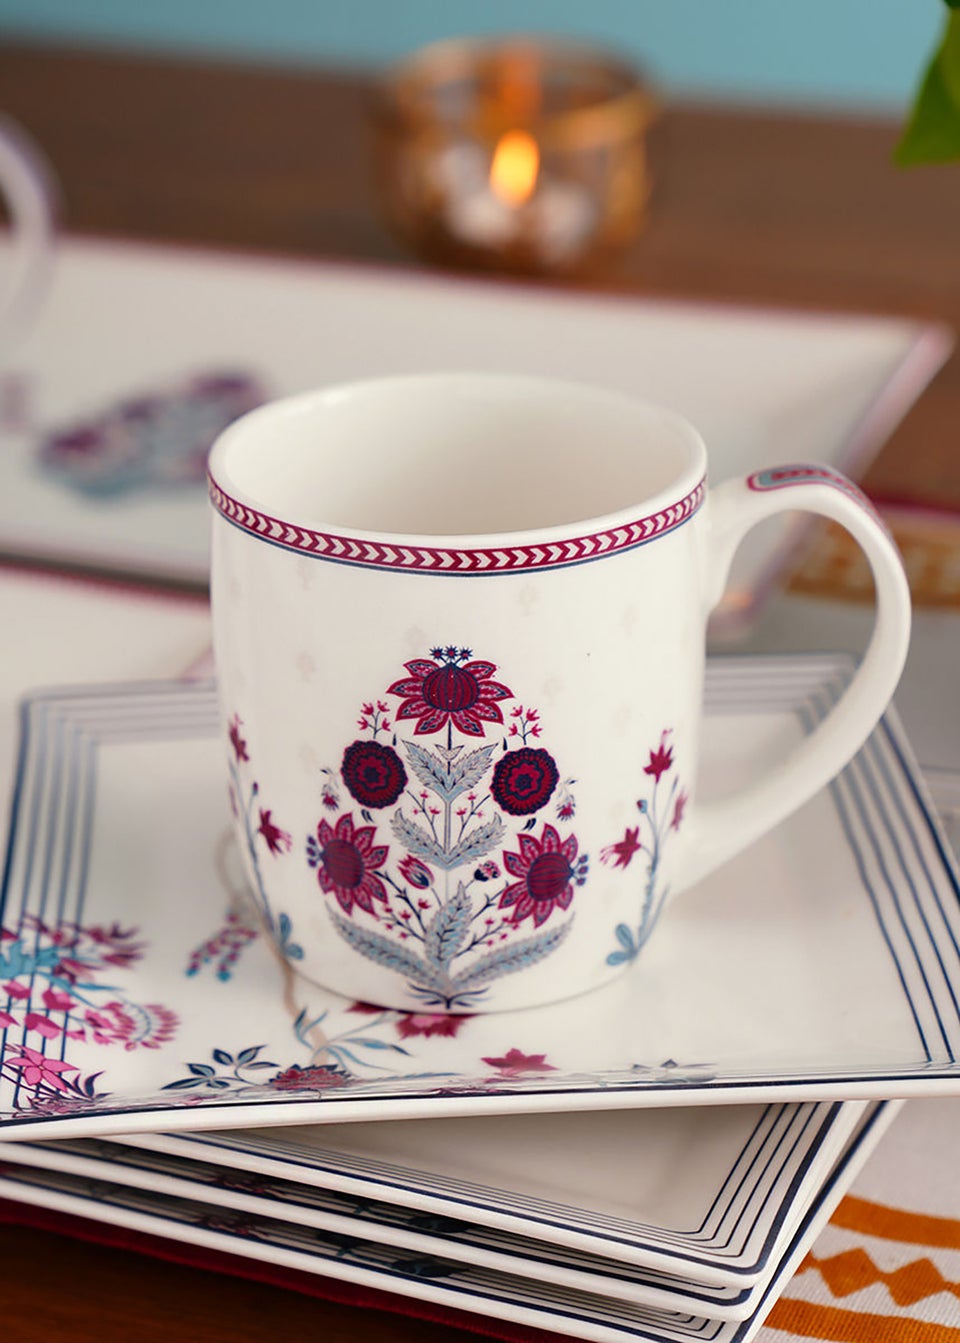 Mughal Inspired Porcelain Mug in A Gift Box